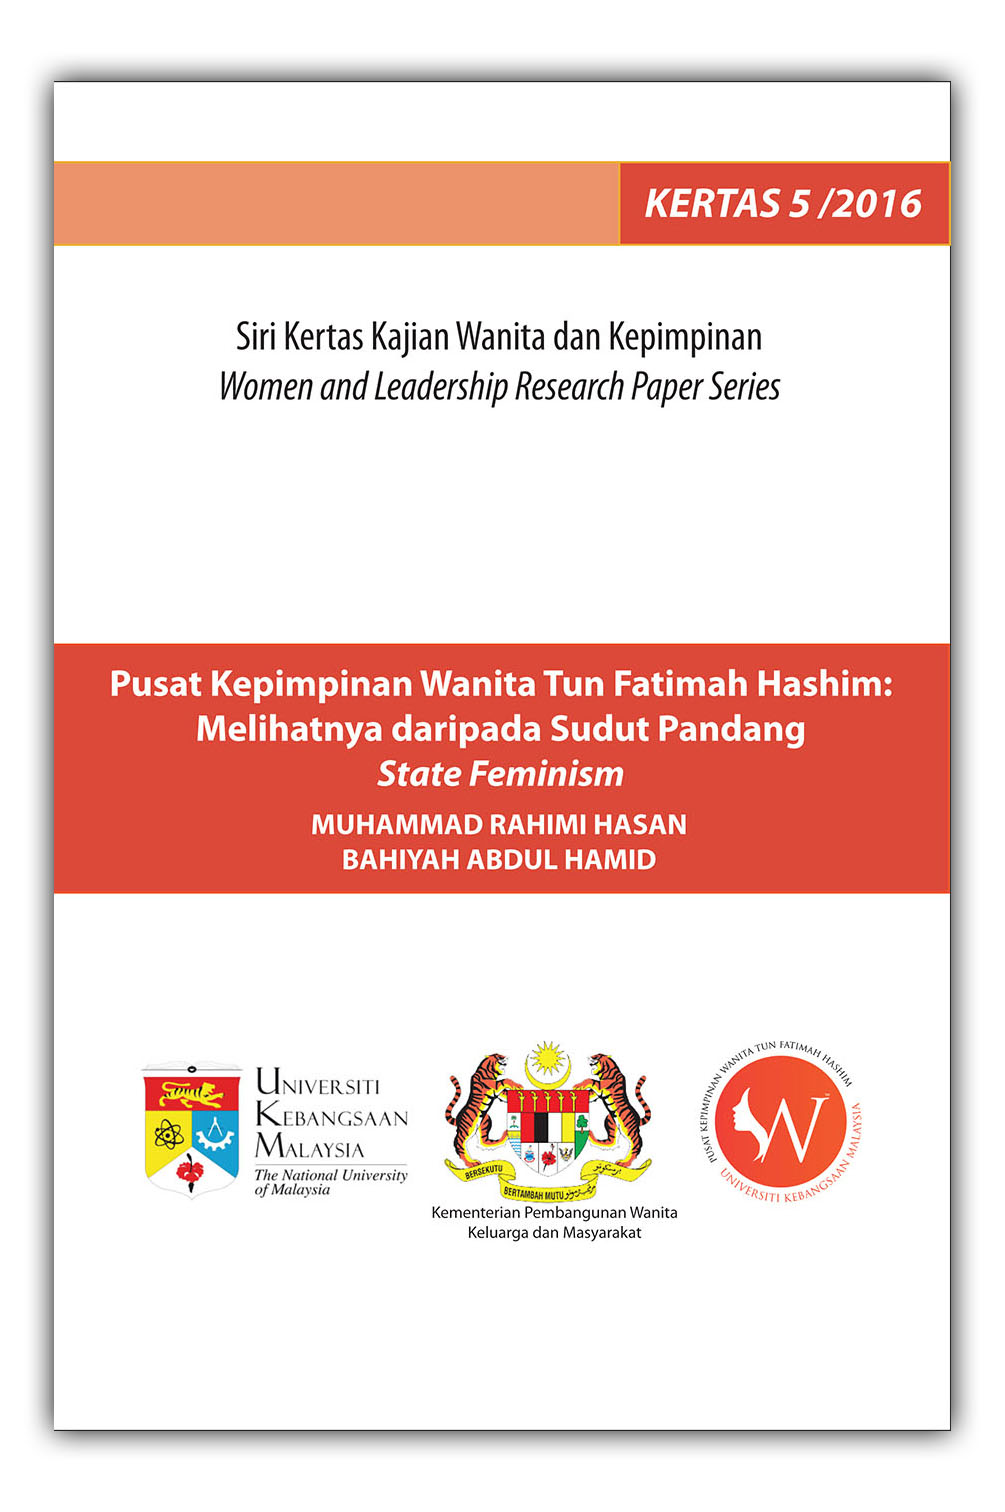 Pusat Kepimpinan Wanita Tun Fatimah Hashim: Melihatnya daripada Sudut Pandang State Feminism